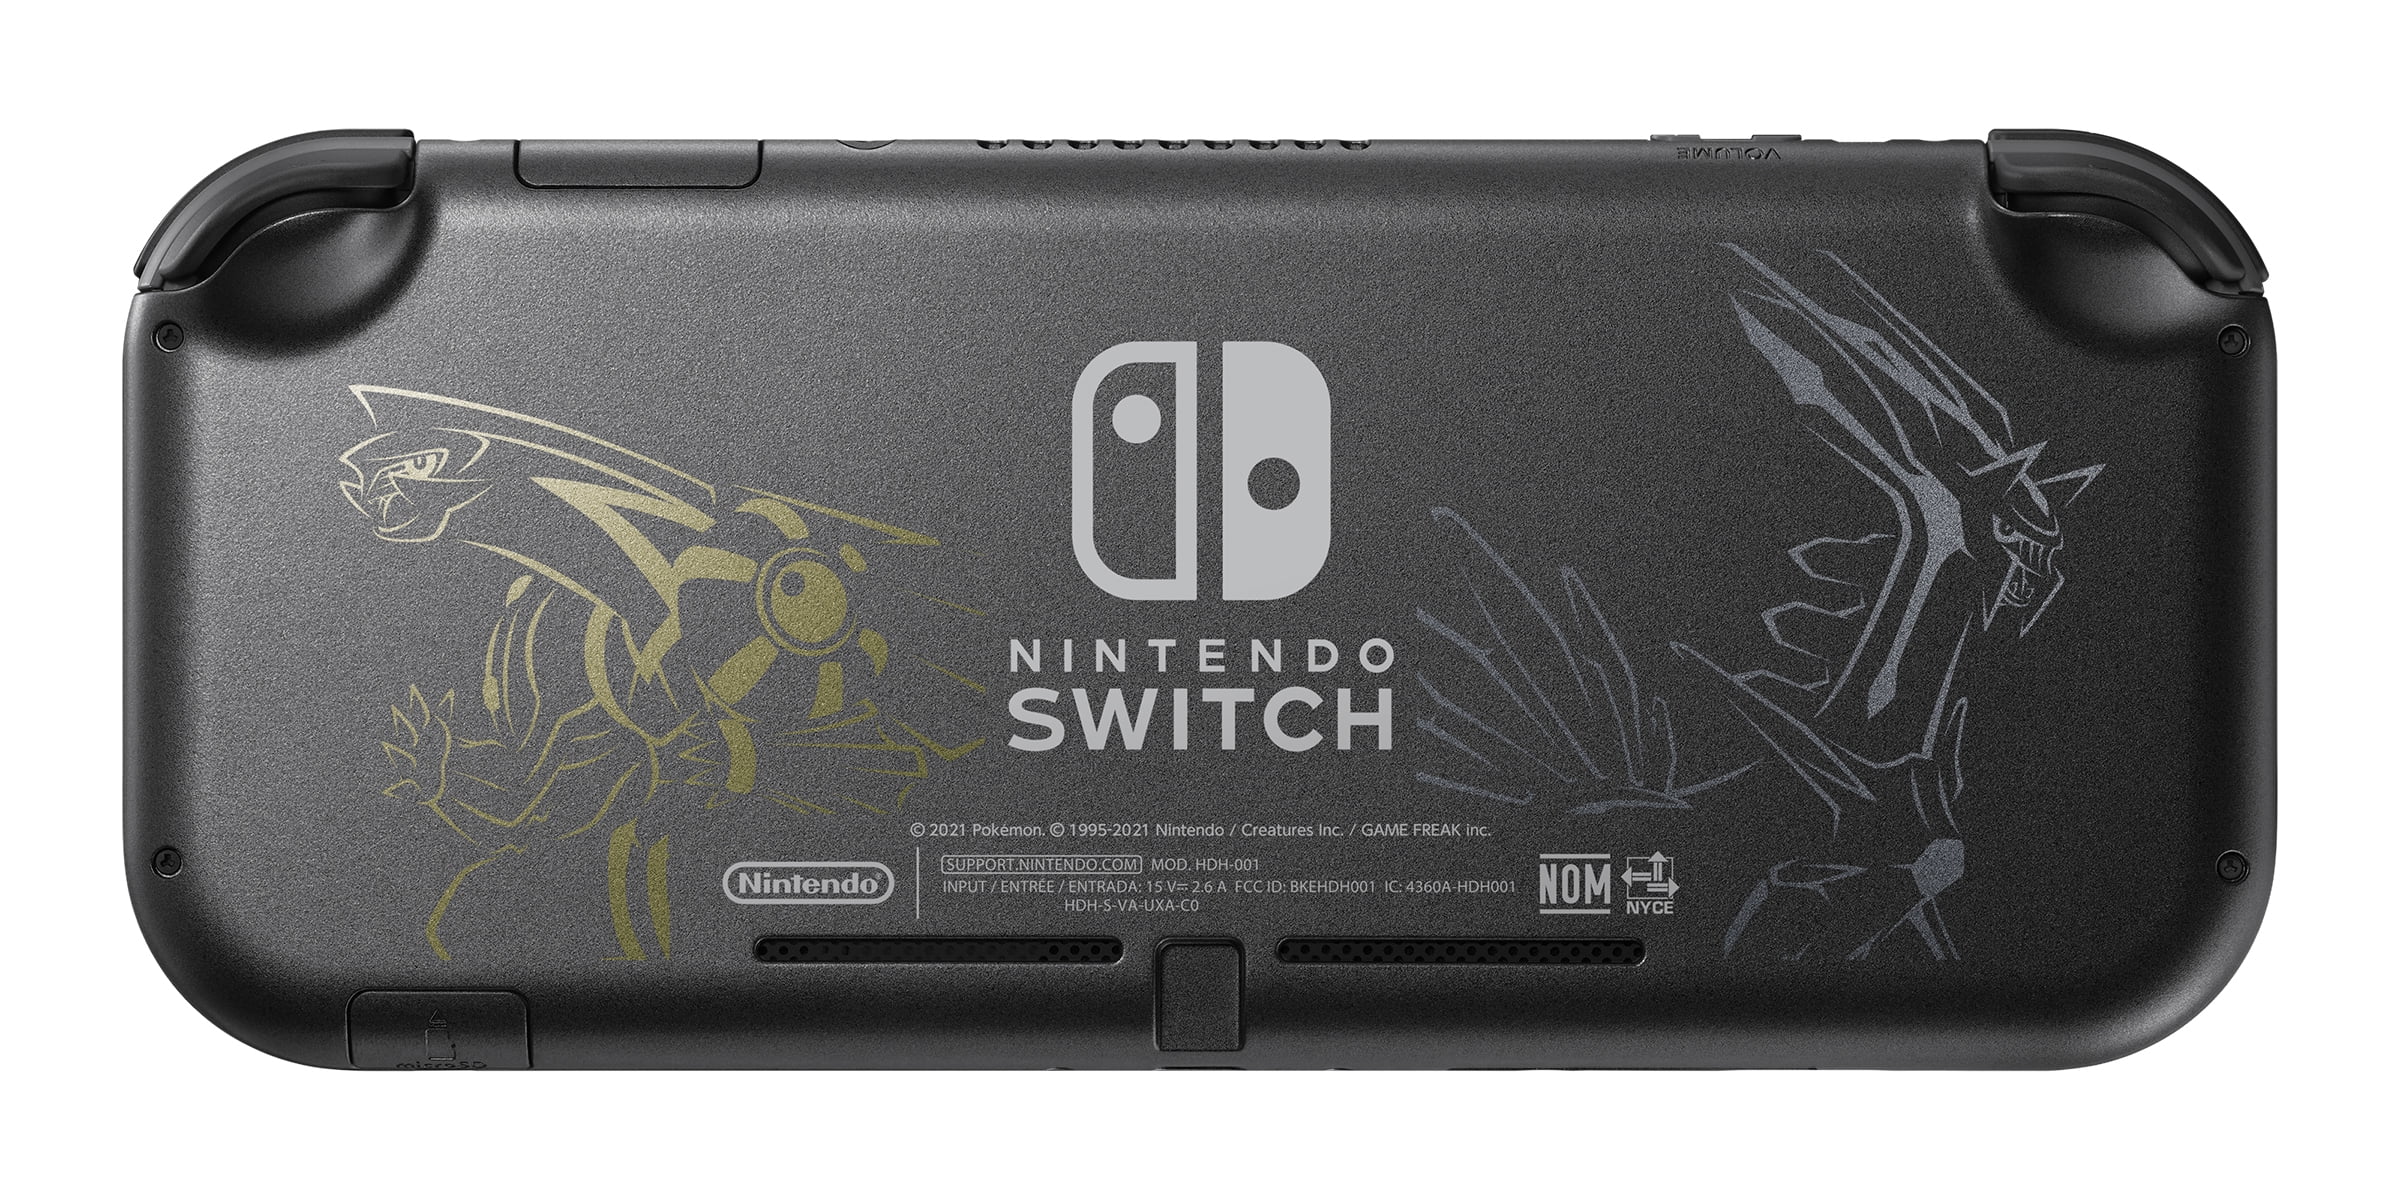 Where To Buy The Nintendo Switch Lite Pokémon Dialga & Palkia Edition